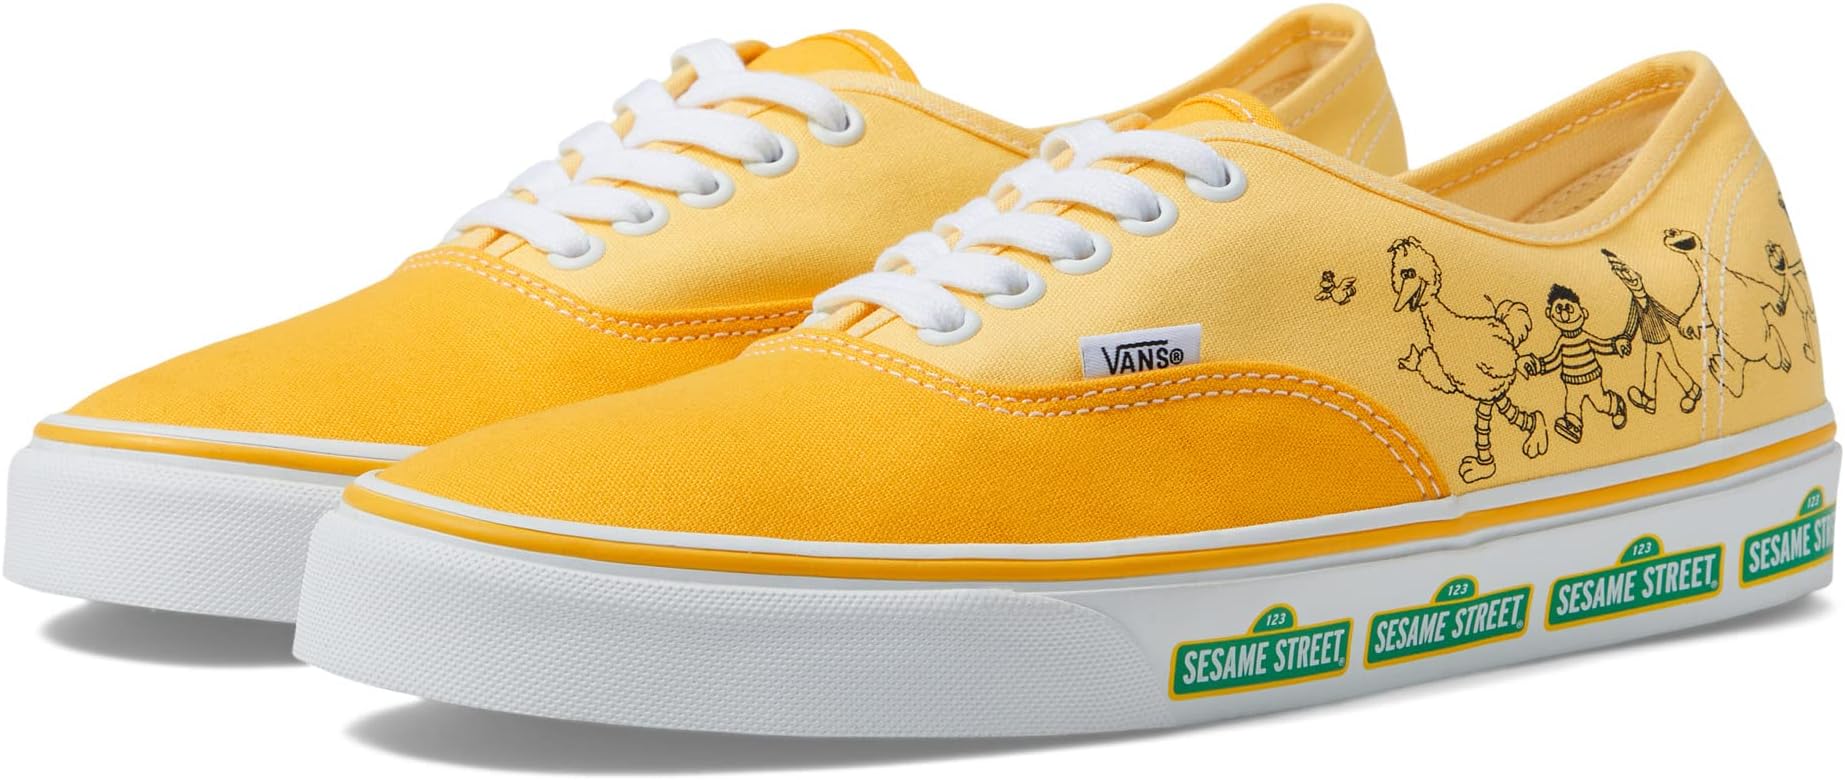 цена Кроссовки Authentic Vans, цвет Sesame Street Yellow